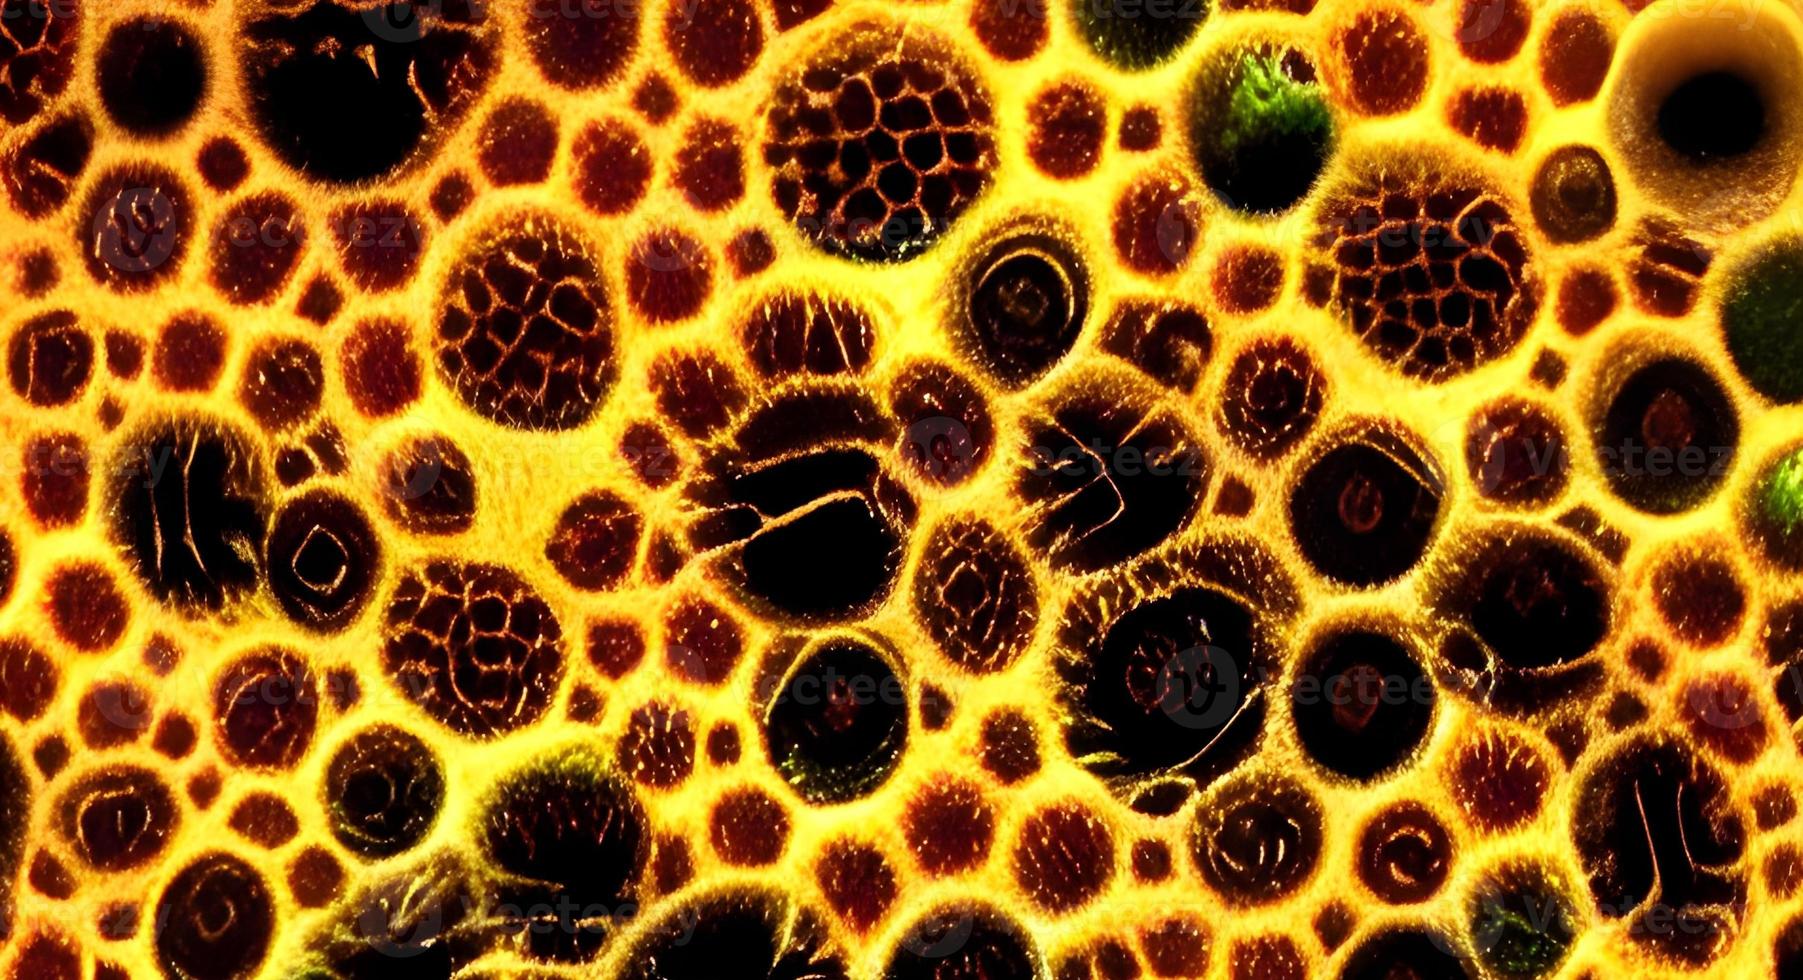 realistische mikroskopische viren verschiedener form auf blauem unscharfem hintergrund nahtlose musterillustration foto